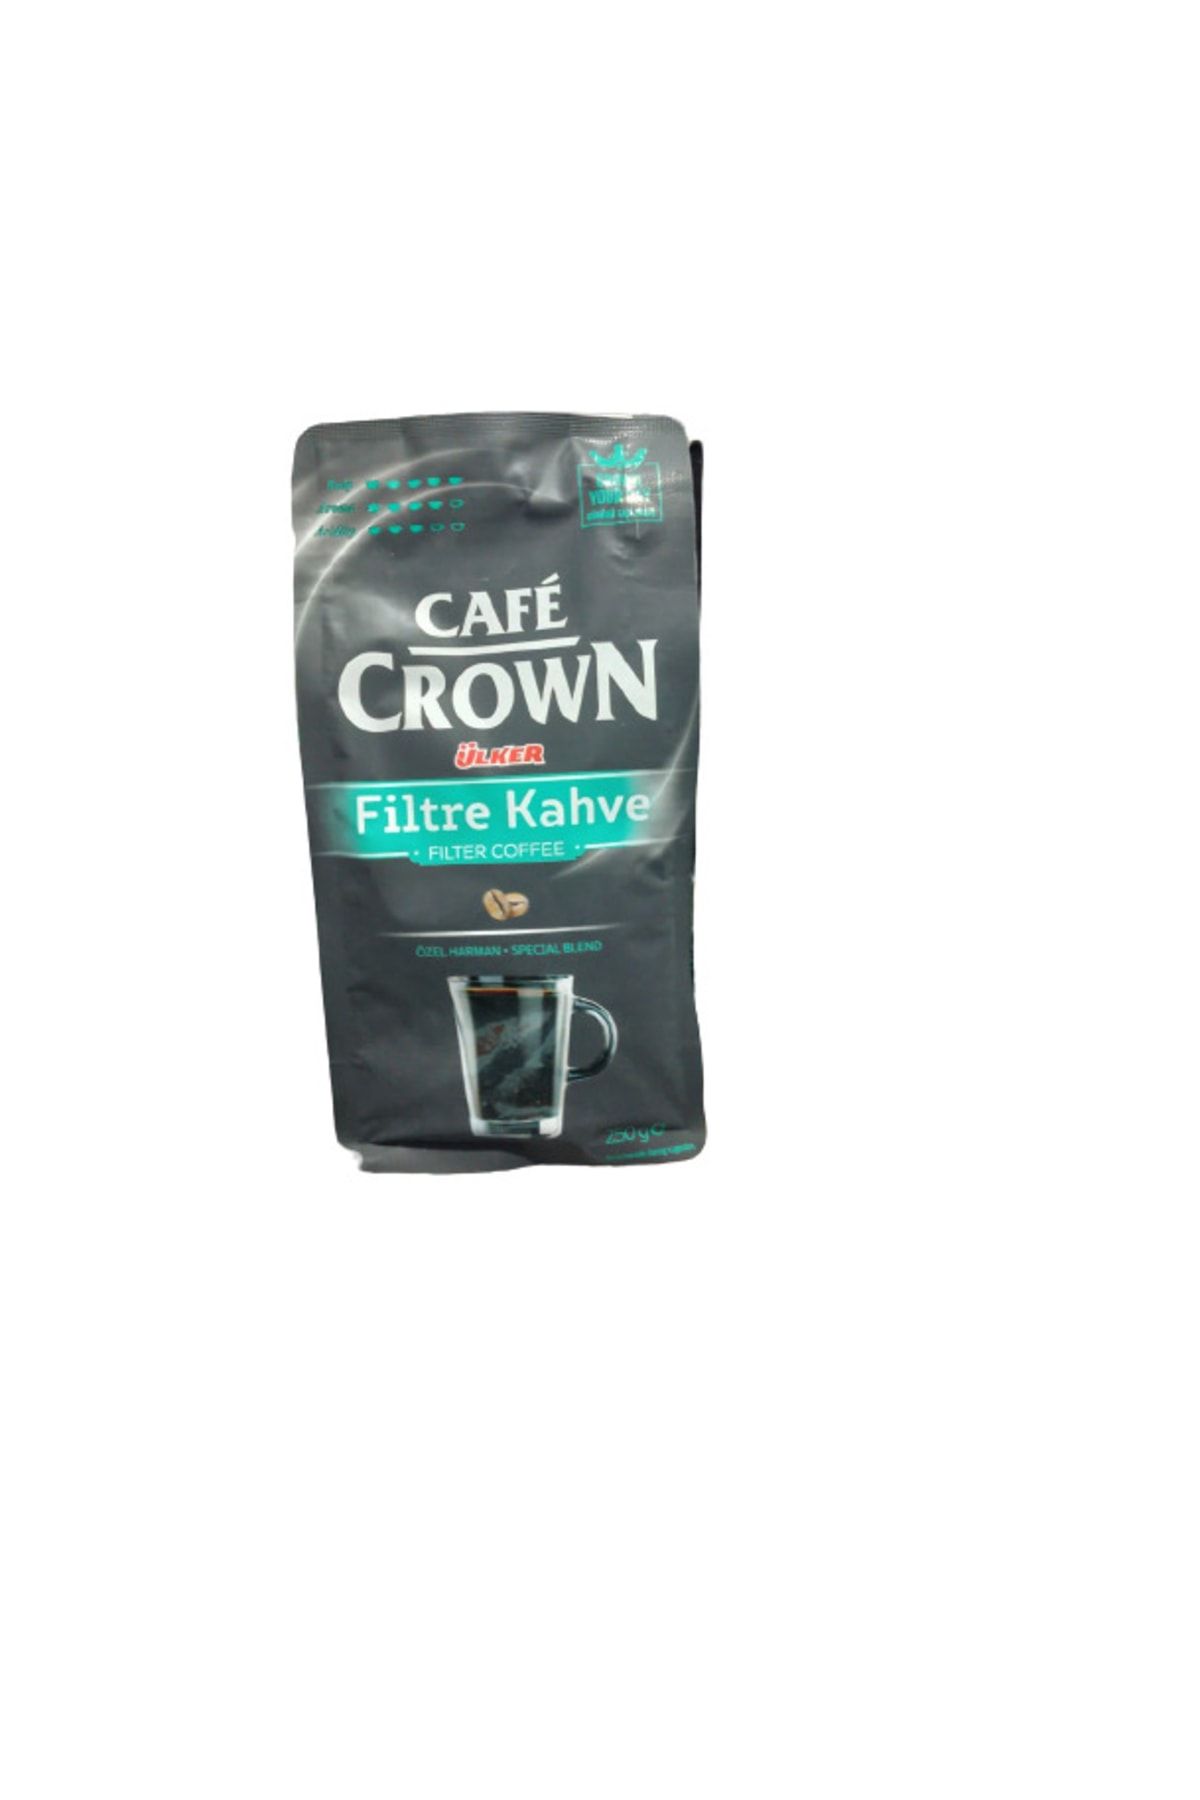 Ülker Cafe Crown Filtre Kahve Özel Harman 250 Gr